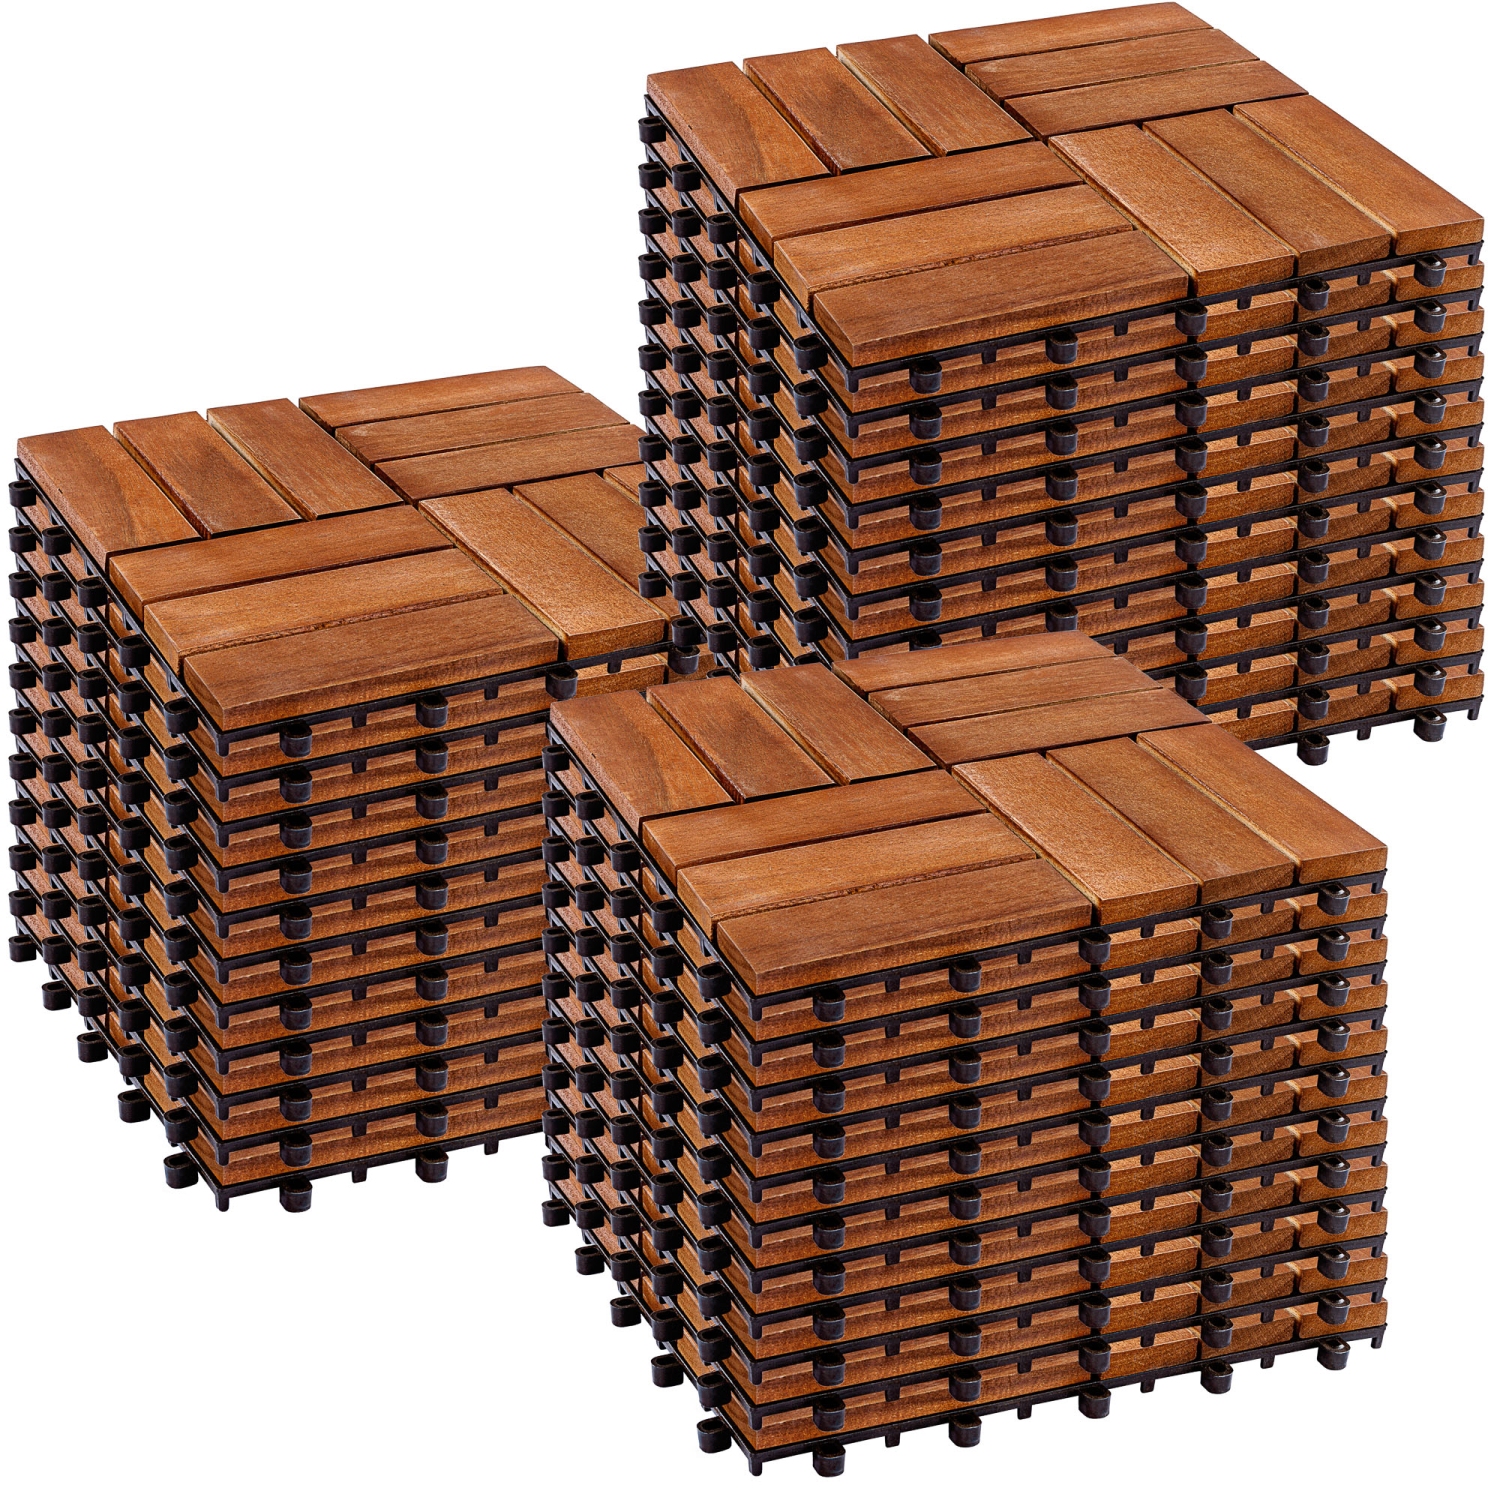 Holz Holzfliesen Akazie Bodenfliesen Terrassenfliese 33 Stück Fliesen Platten 